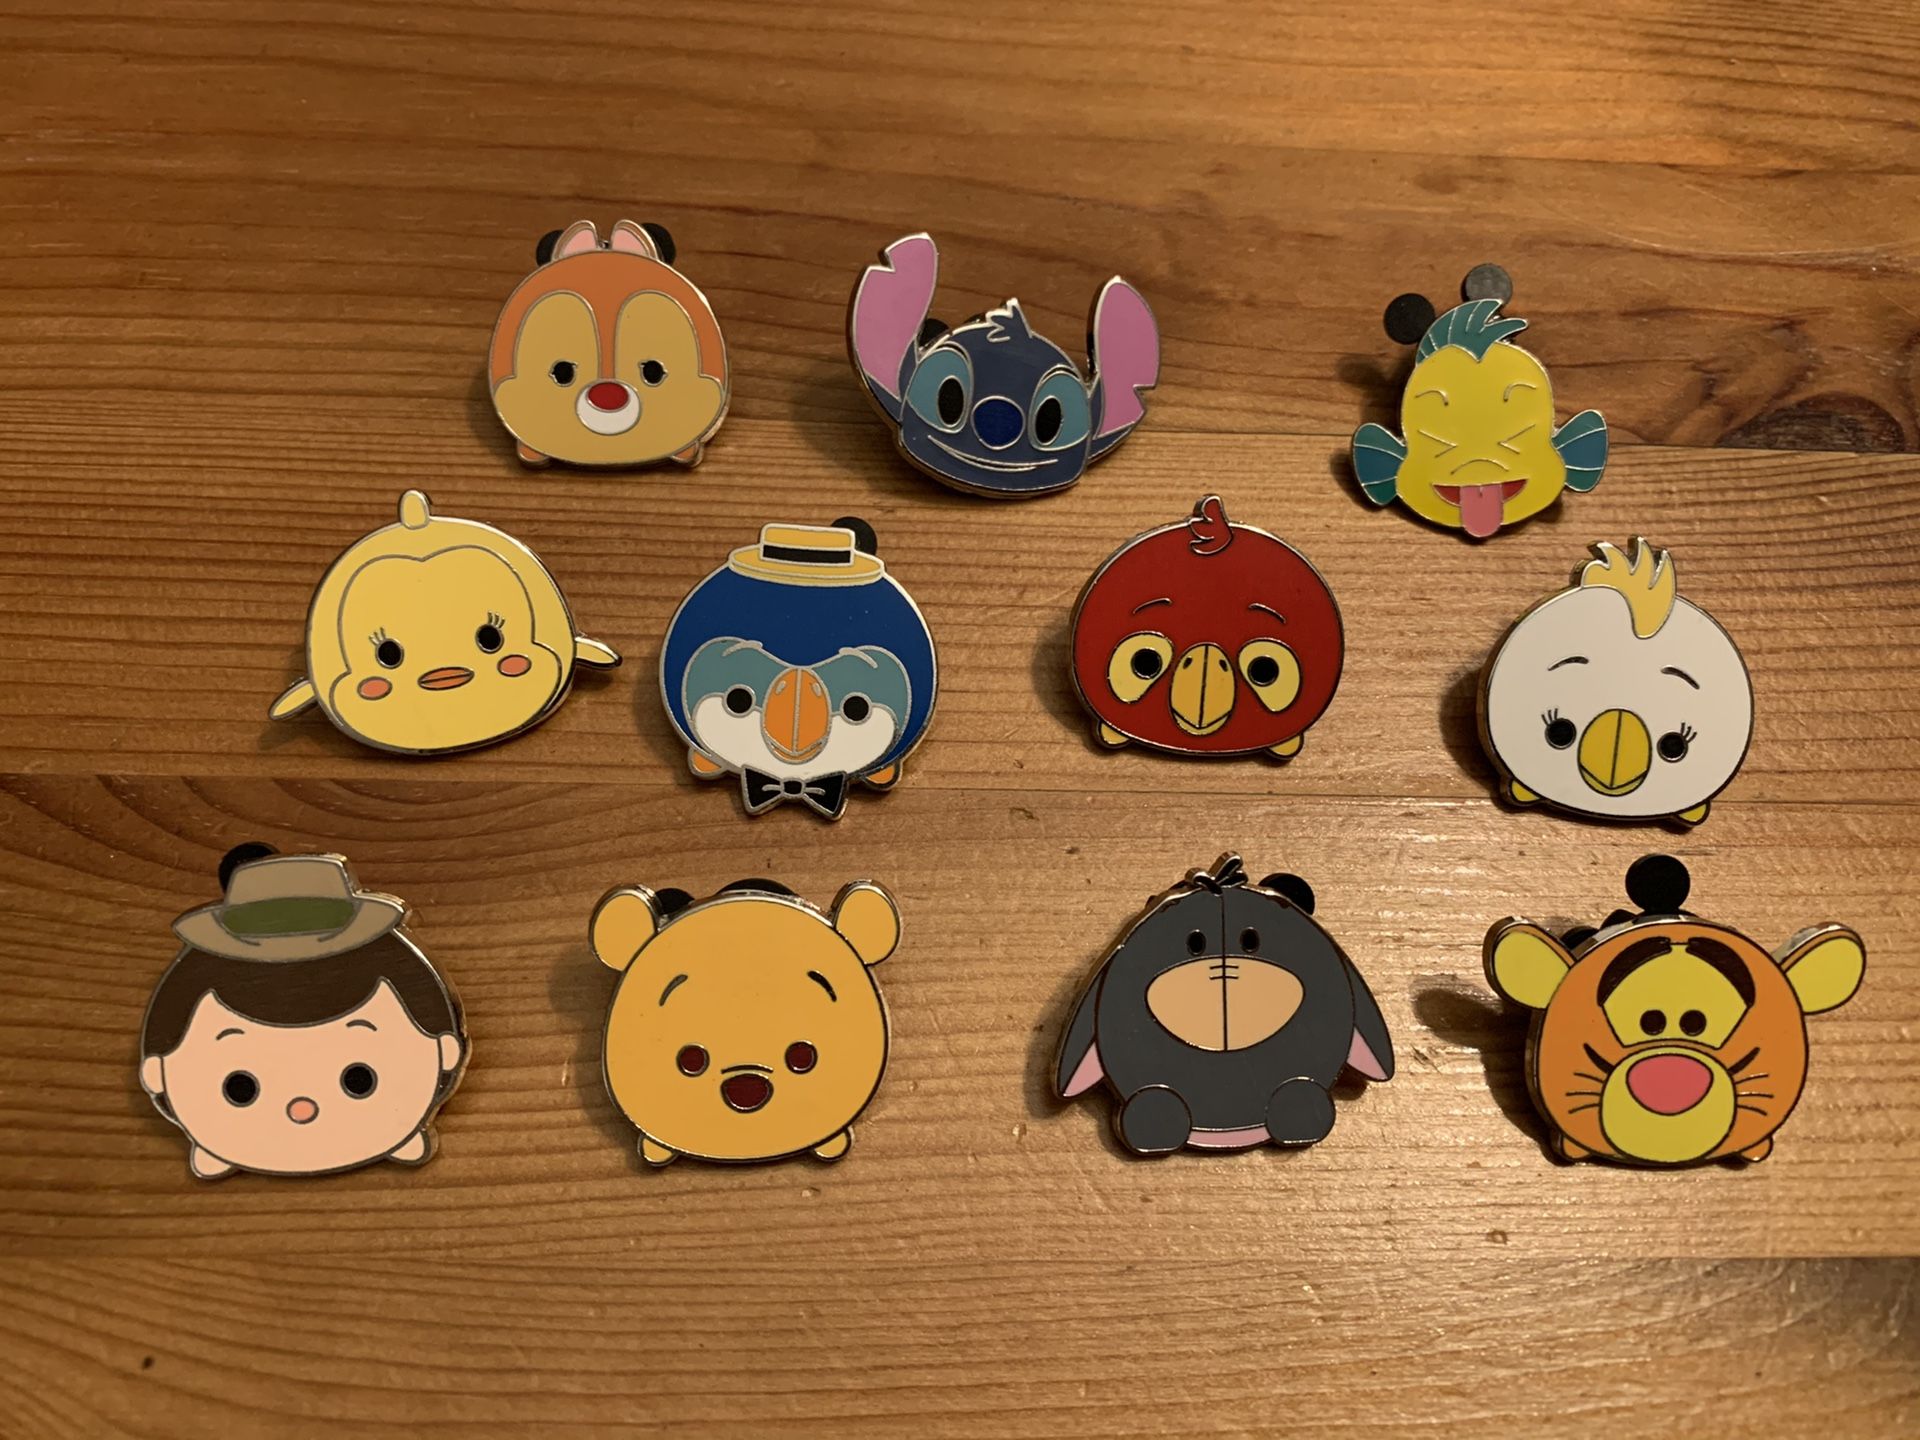 Disney Trading pins - Tsum Tsum set